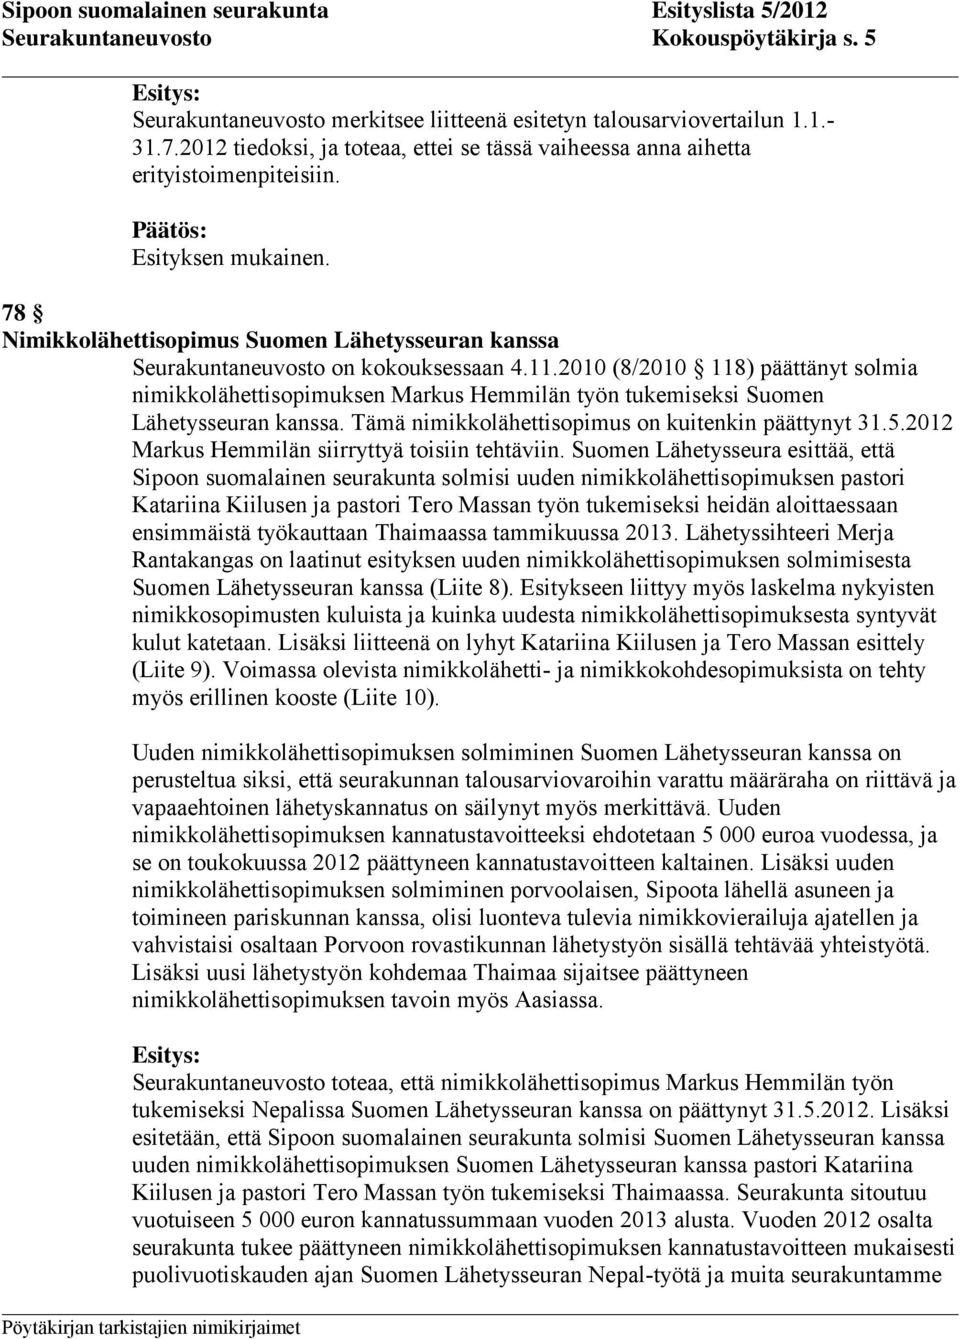 2010 (8/2010 118) päättänyt solmia nimikkolähettisopimuksen Markus Hemmilän työn tukemiseksi Suomen Lähetysseuran kanssa. Tämä nimikkolähettisopimus on kuitenkin päättynyt 31.5.